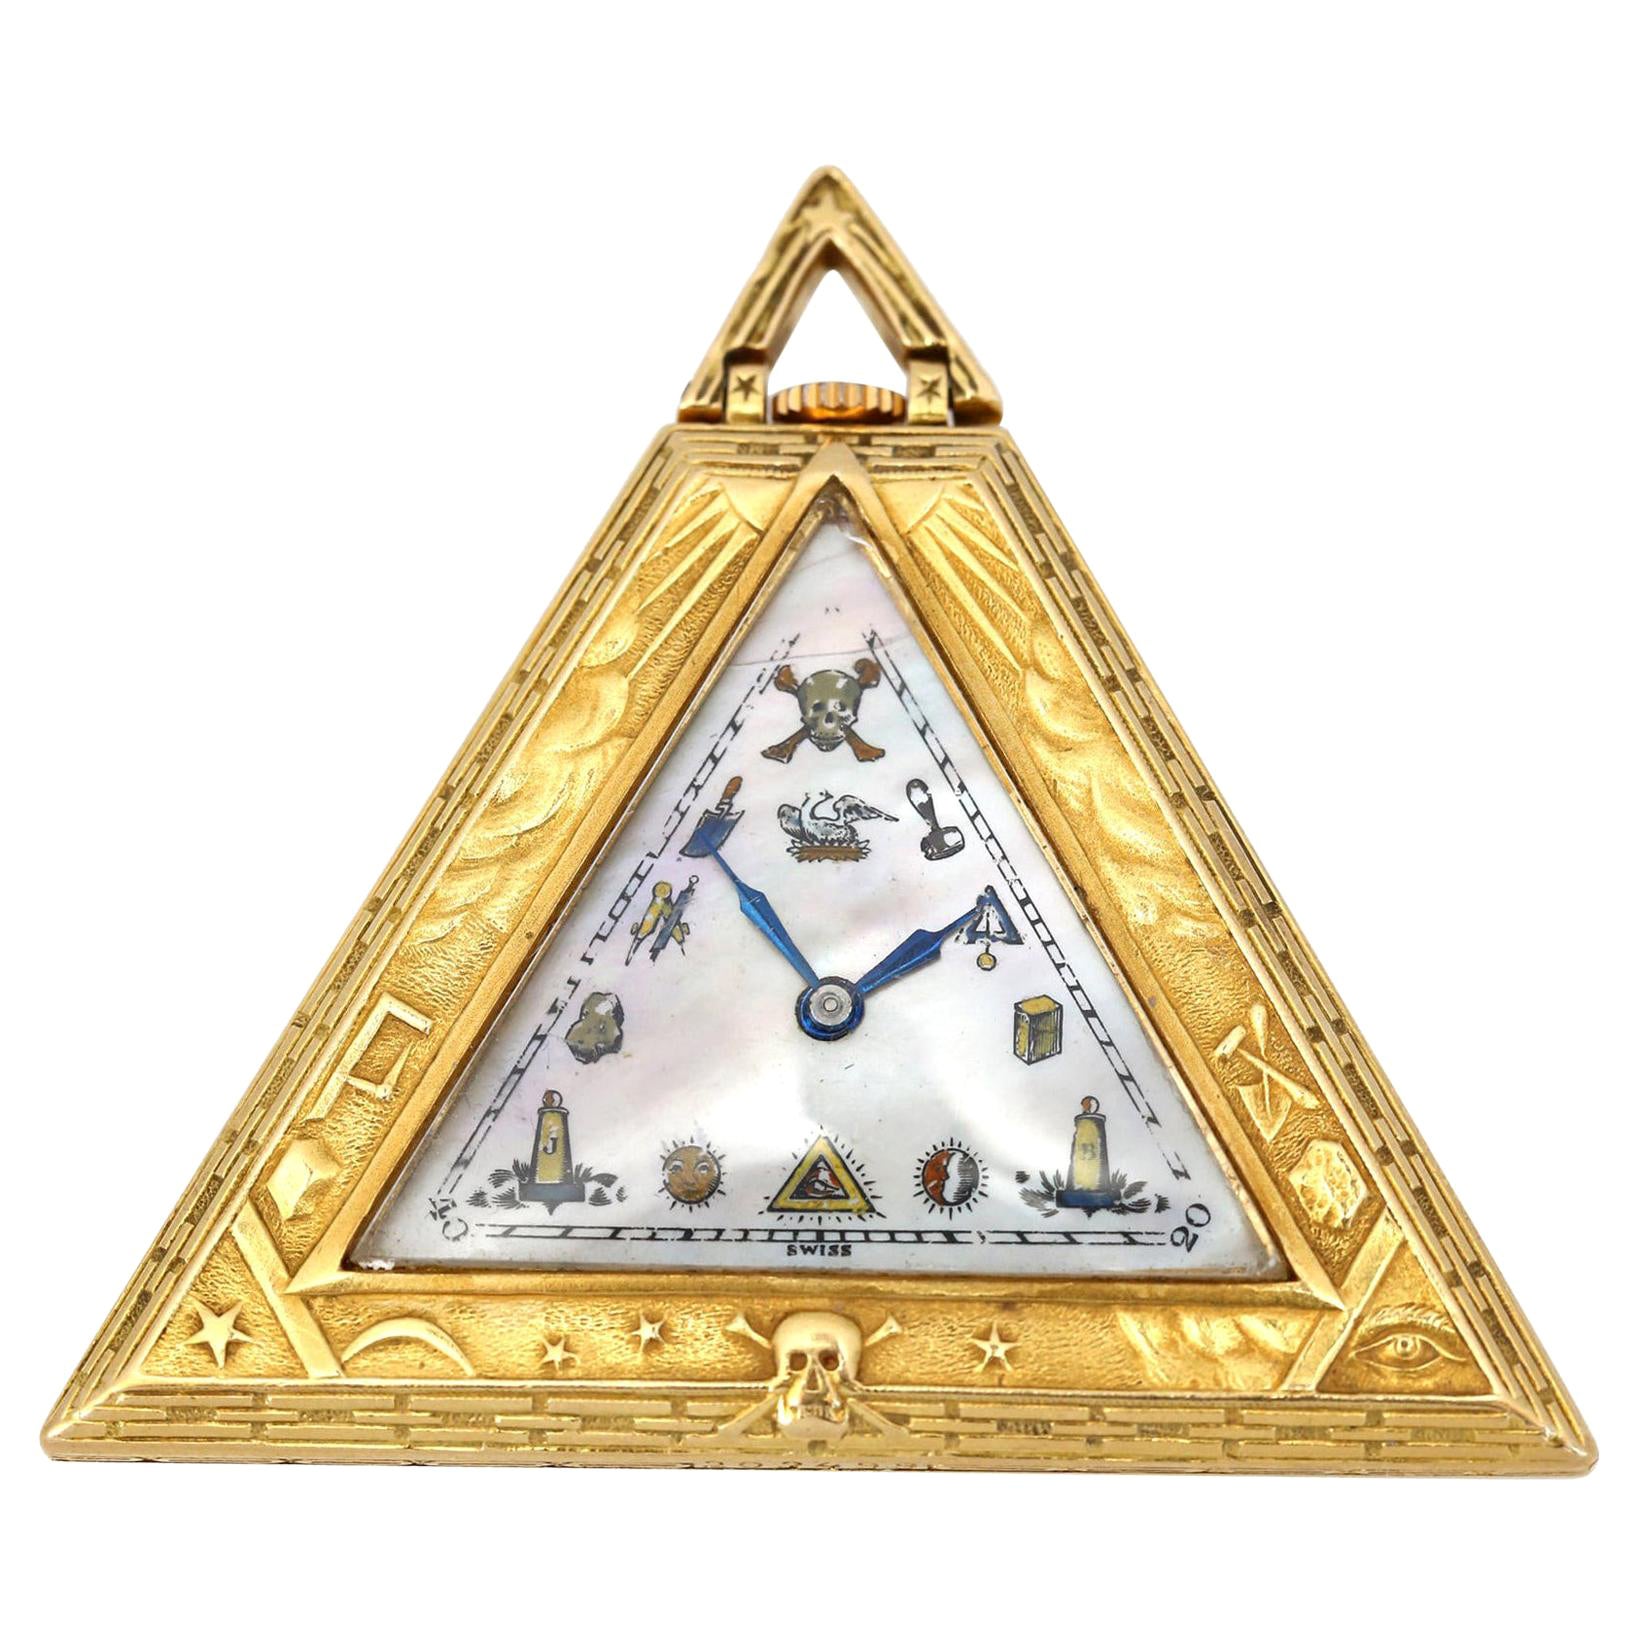 Masoniс Art Deco Dreieck Pyramide Gold Uhr Levrette Schweizer, 1920